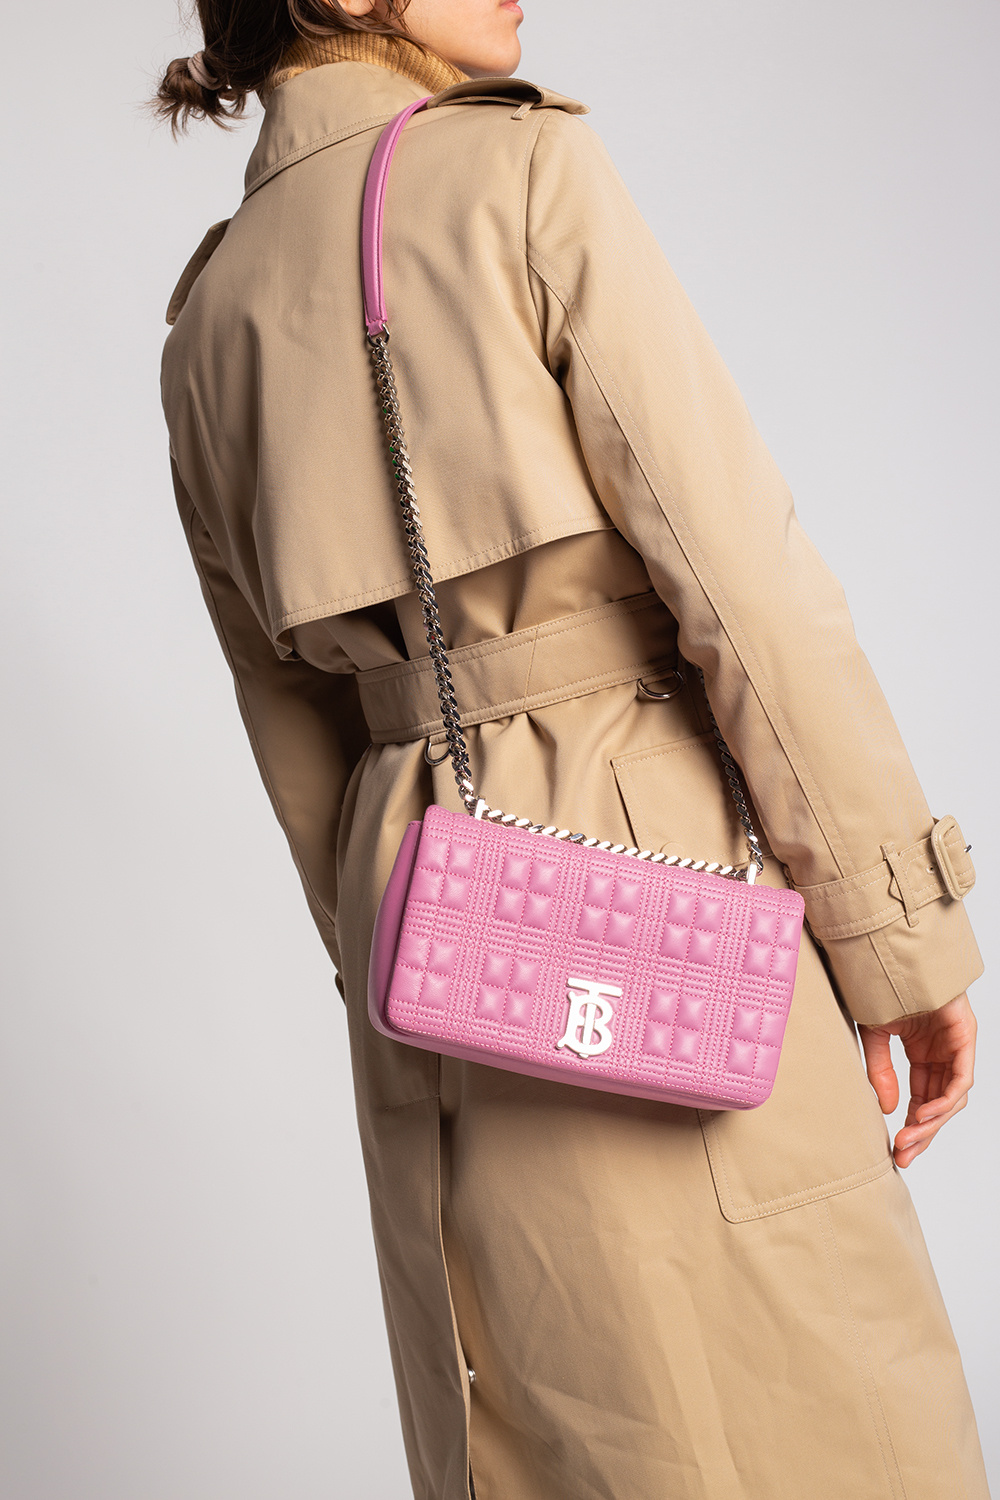 BURBERRY: Lola matelassé leather bag - Pink  Burberry shoulder bag 8045991  online at